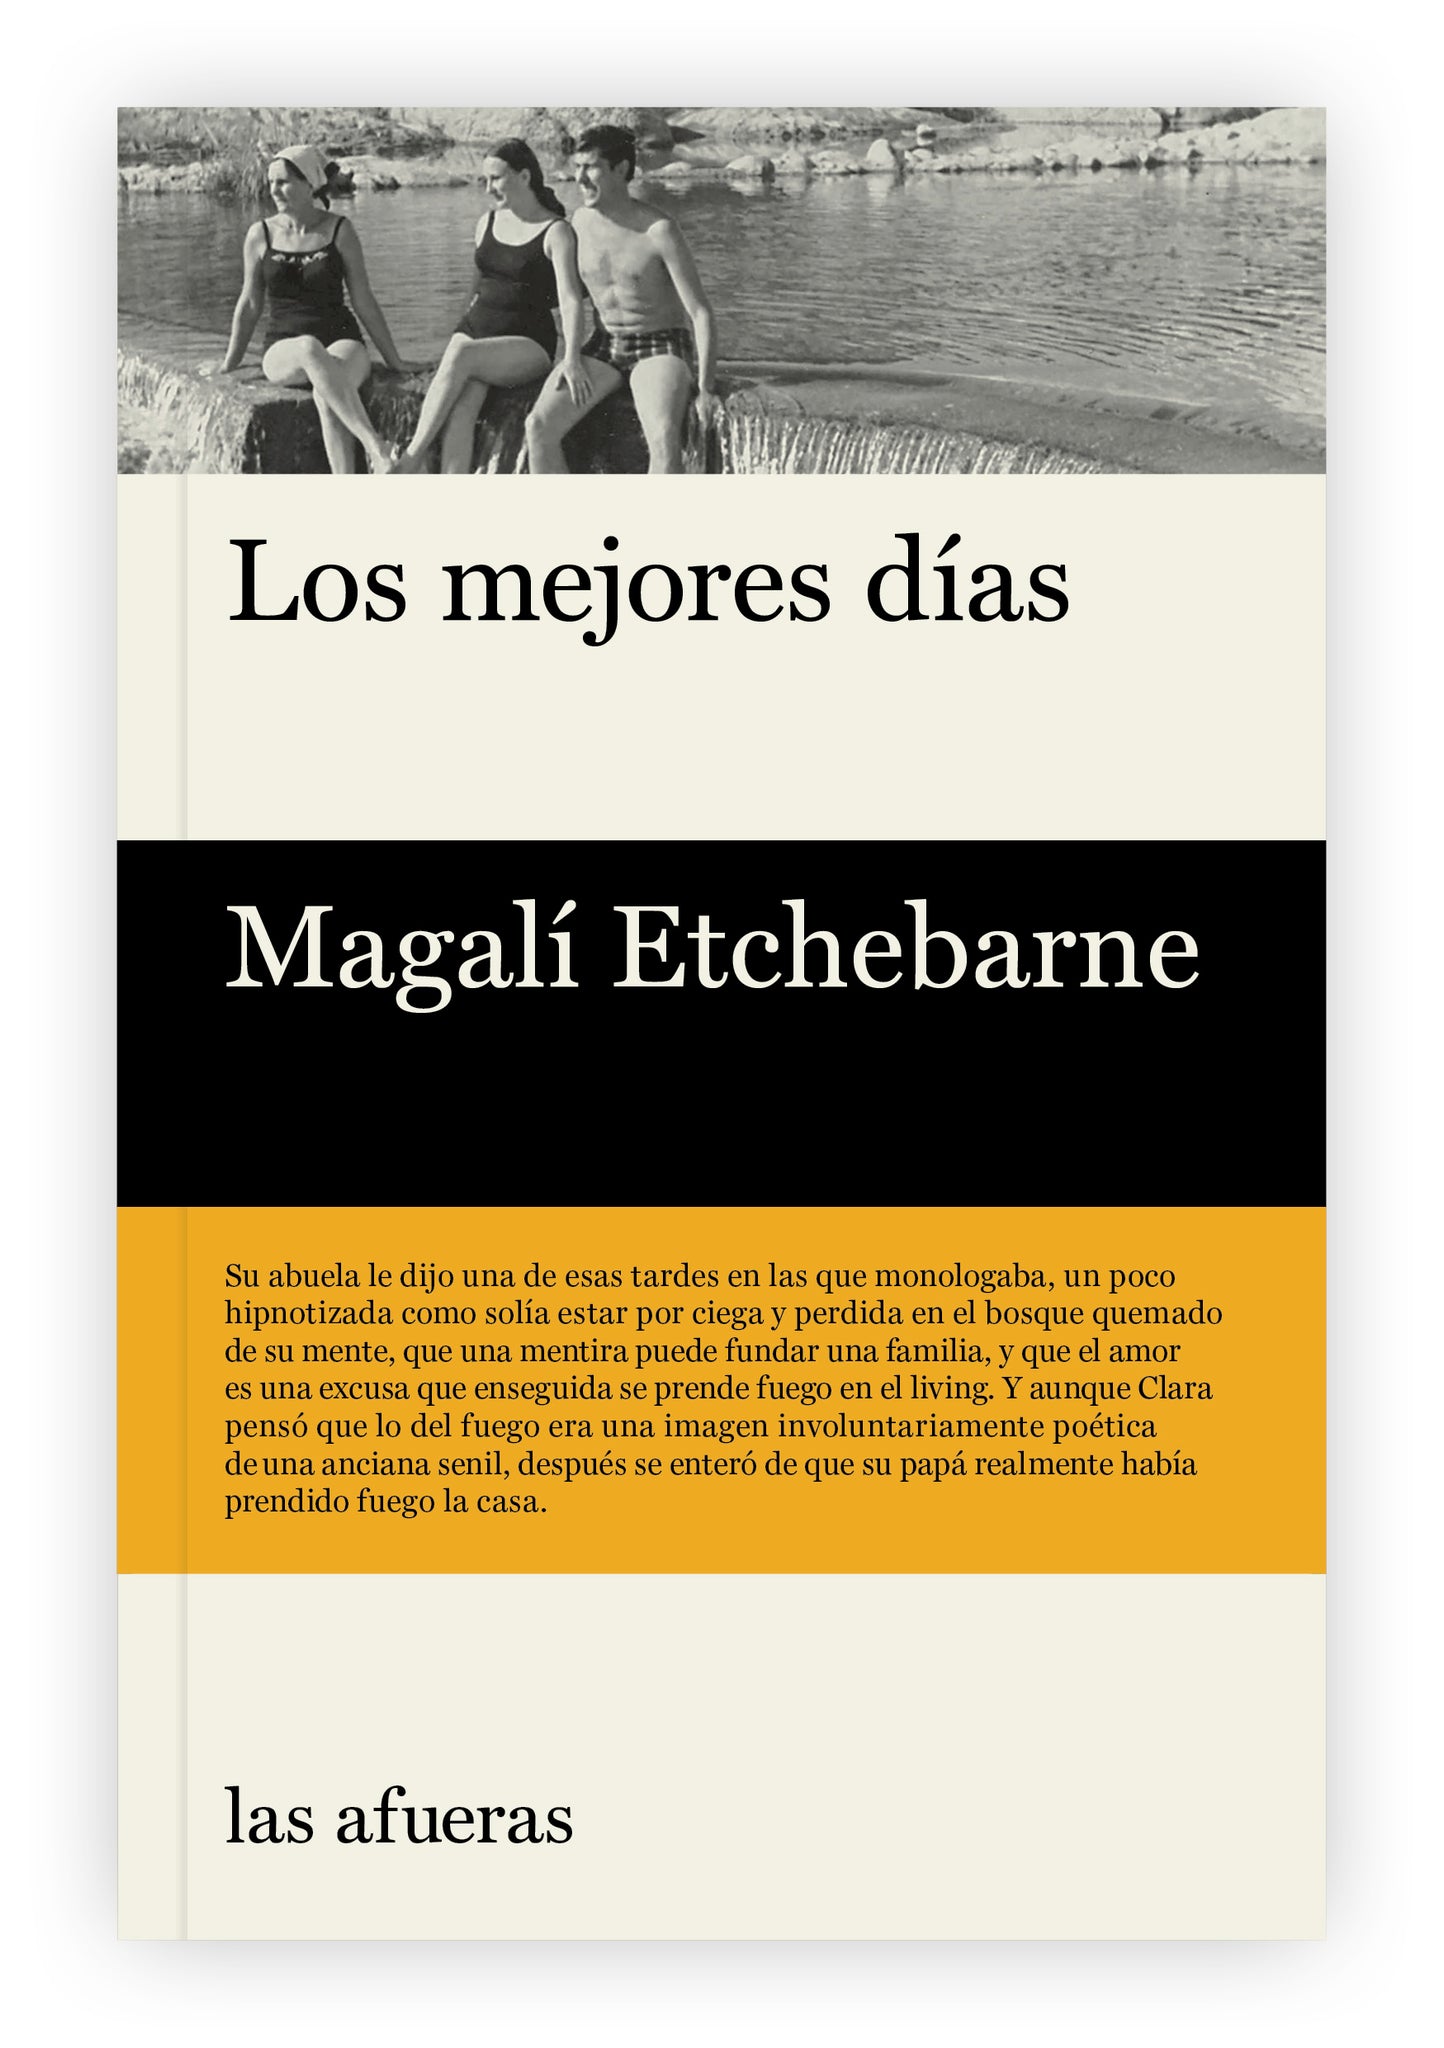 "Los mejores días" de Magalí Etchebarne